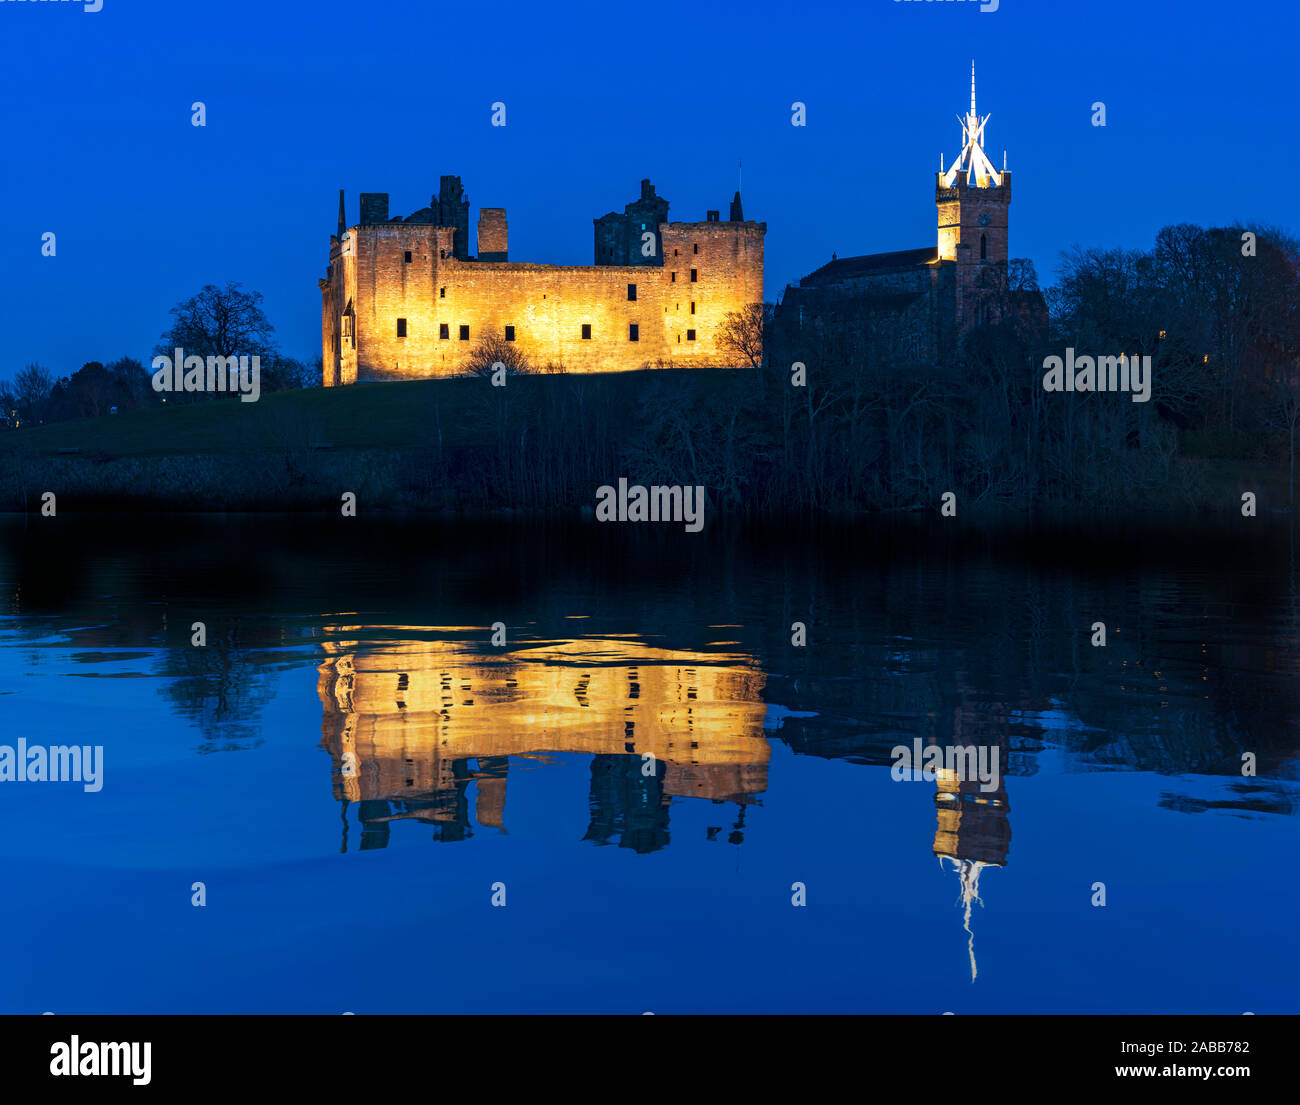 Anzeigen von Linlithgow Palace in der Nacht in Linlithgow, West Lothian, Schottland, Großbritannien. Geburtsort von Mary Queen of Scots. Stockfoto